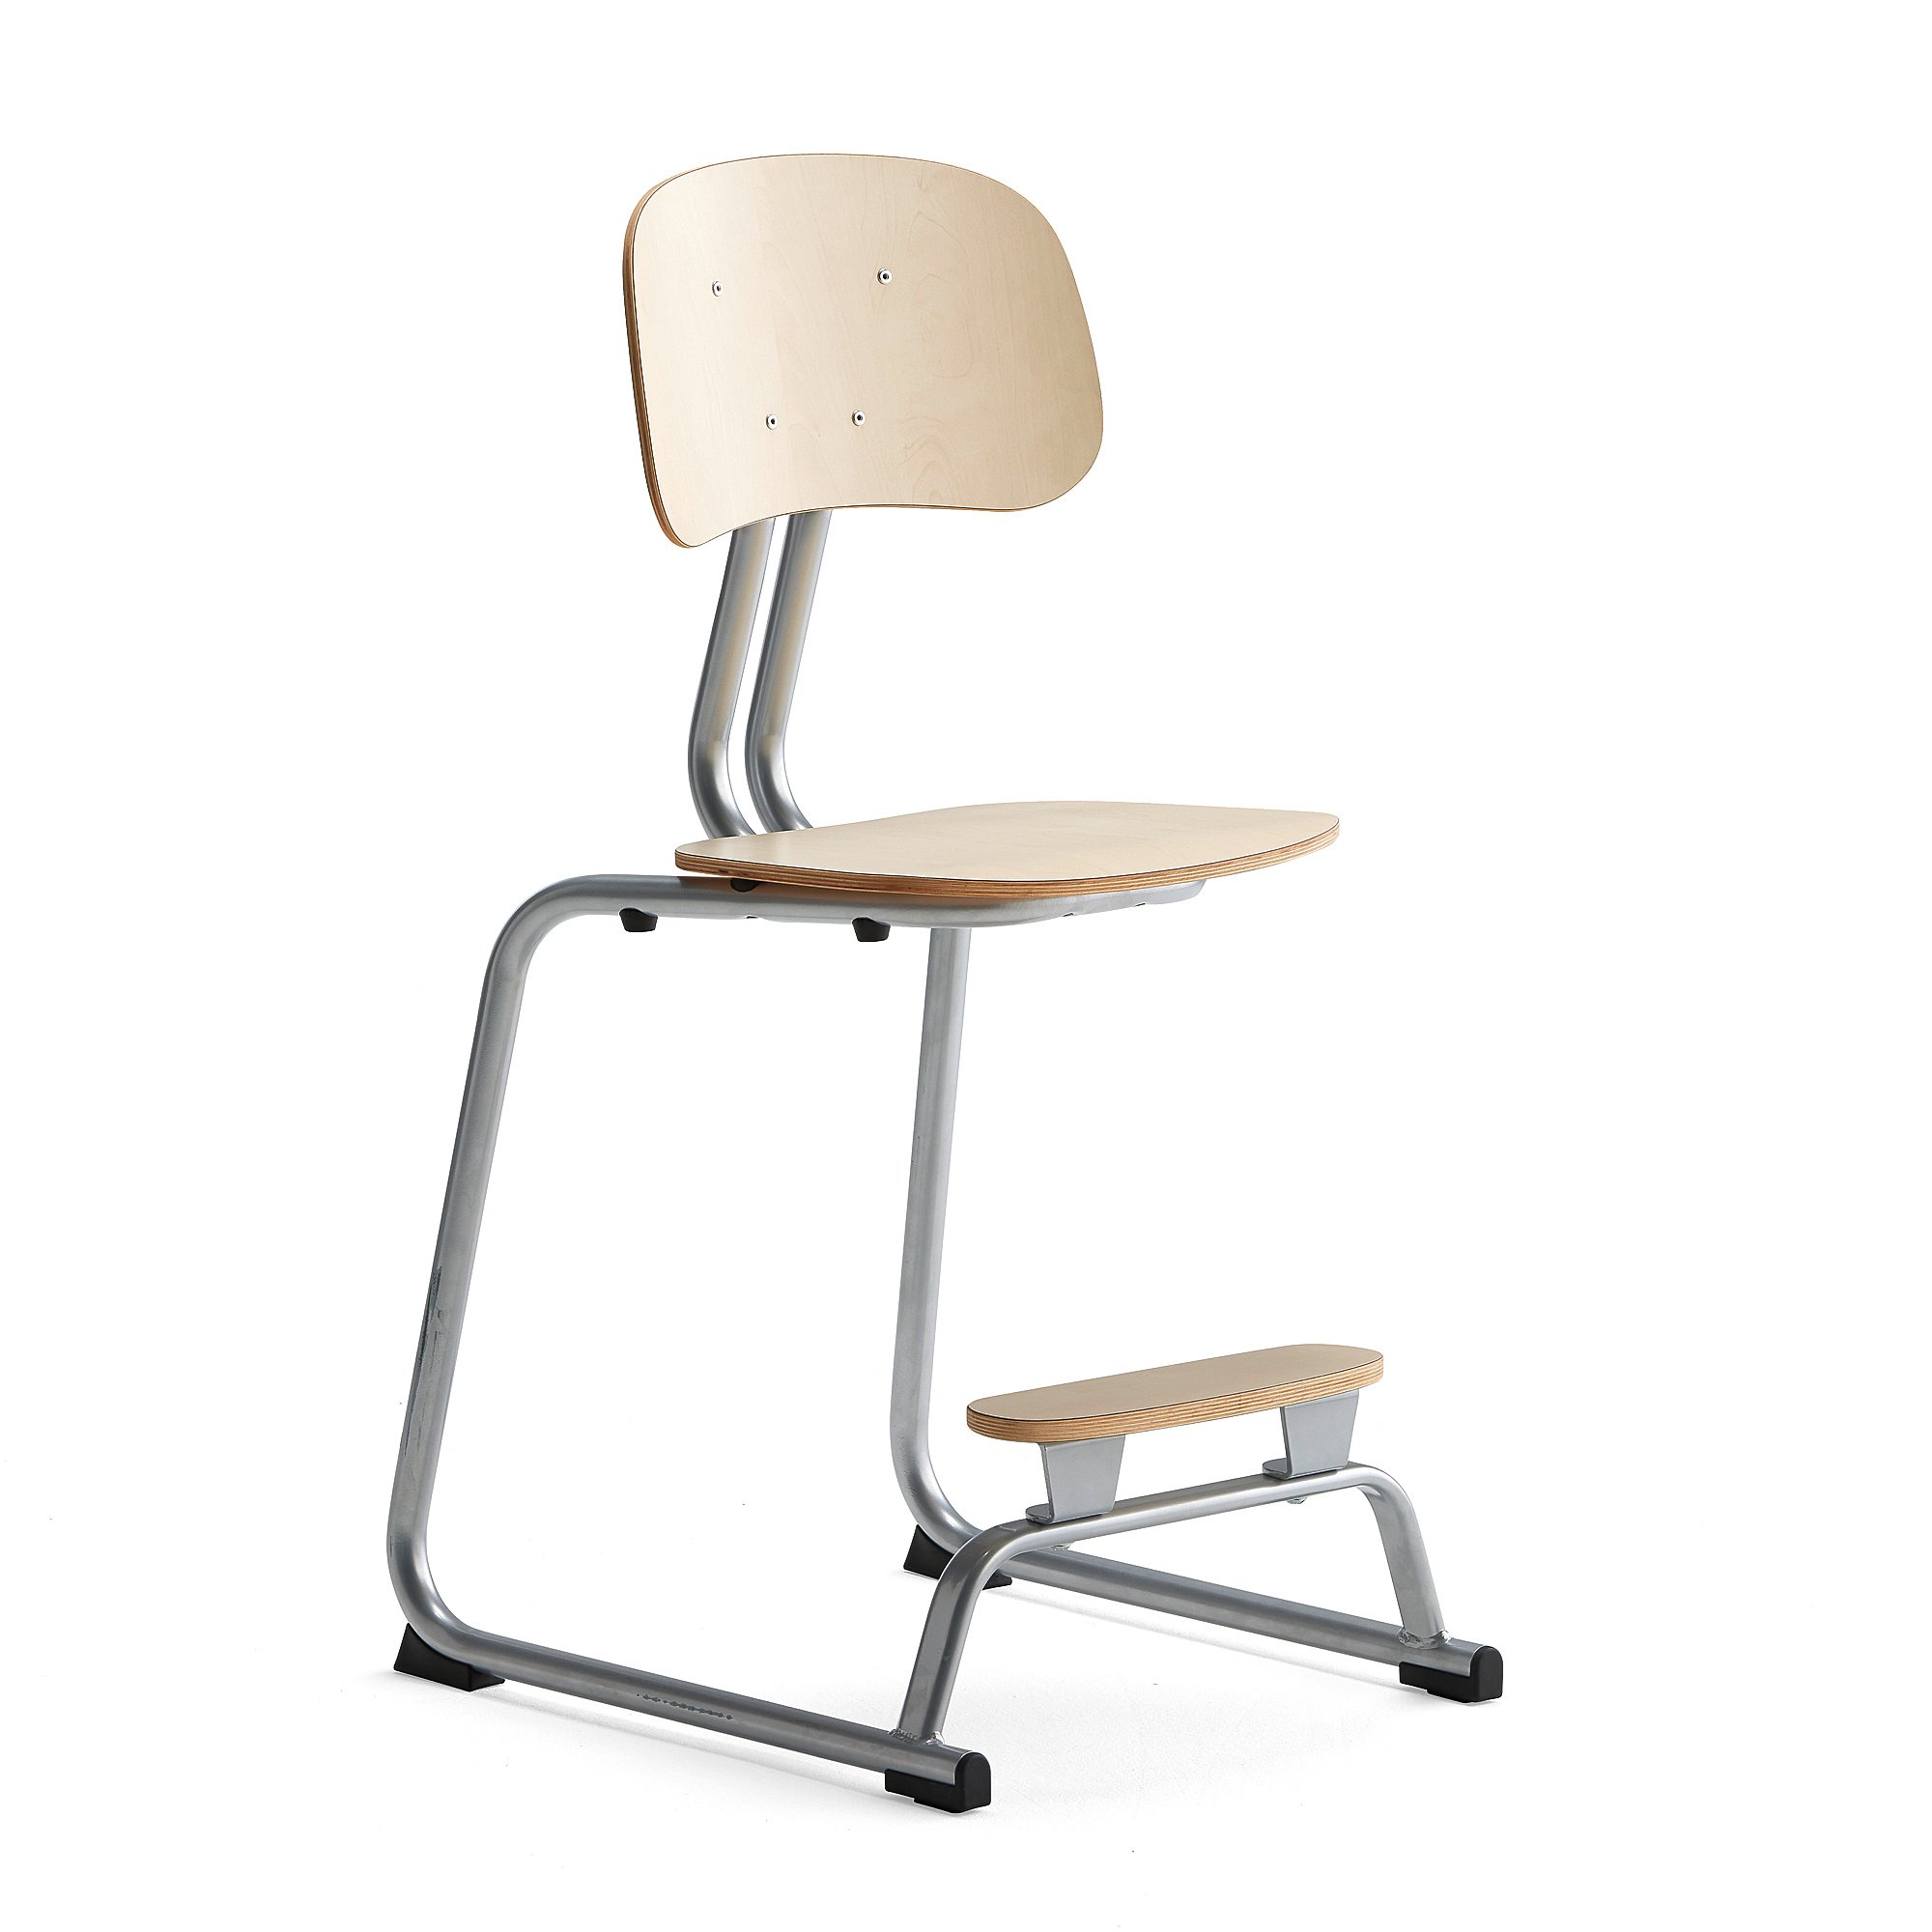 Školní židle YNGVE, ližinová podnož, výška 520 mm, stříbrná/bříza